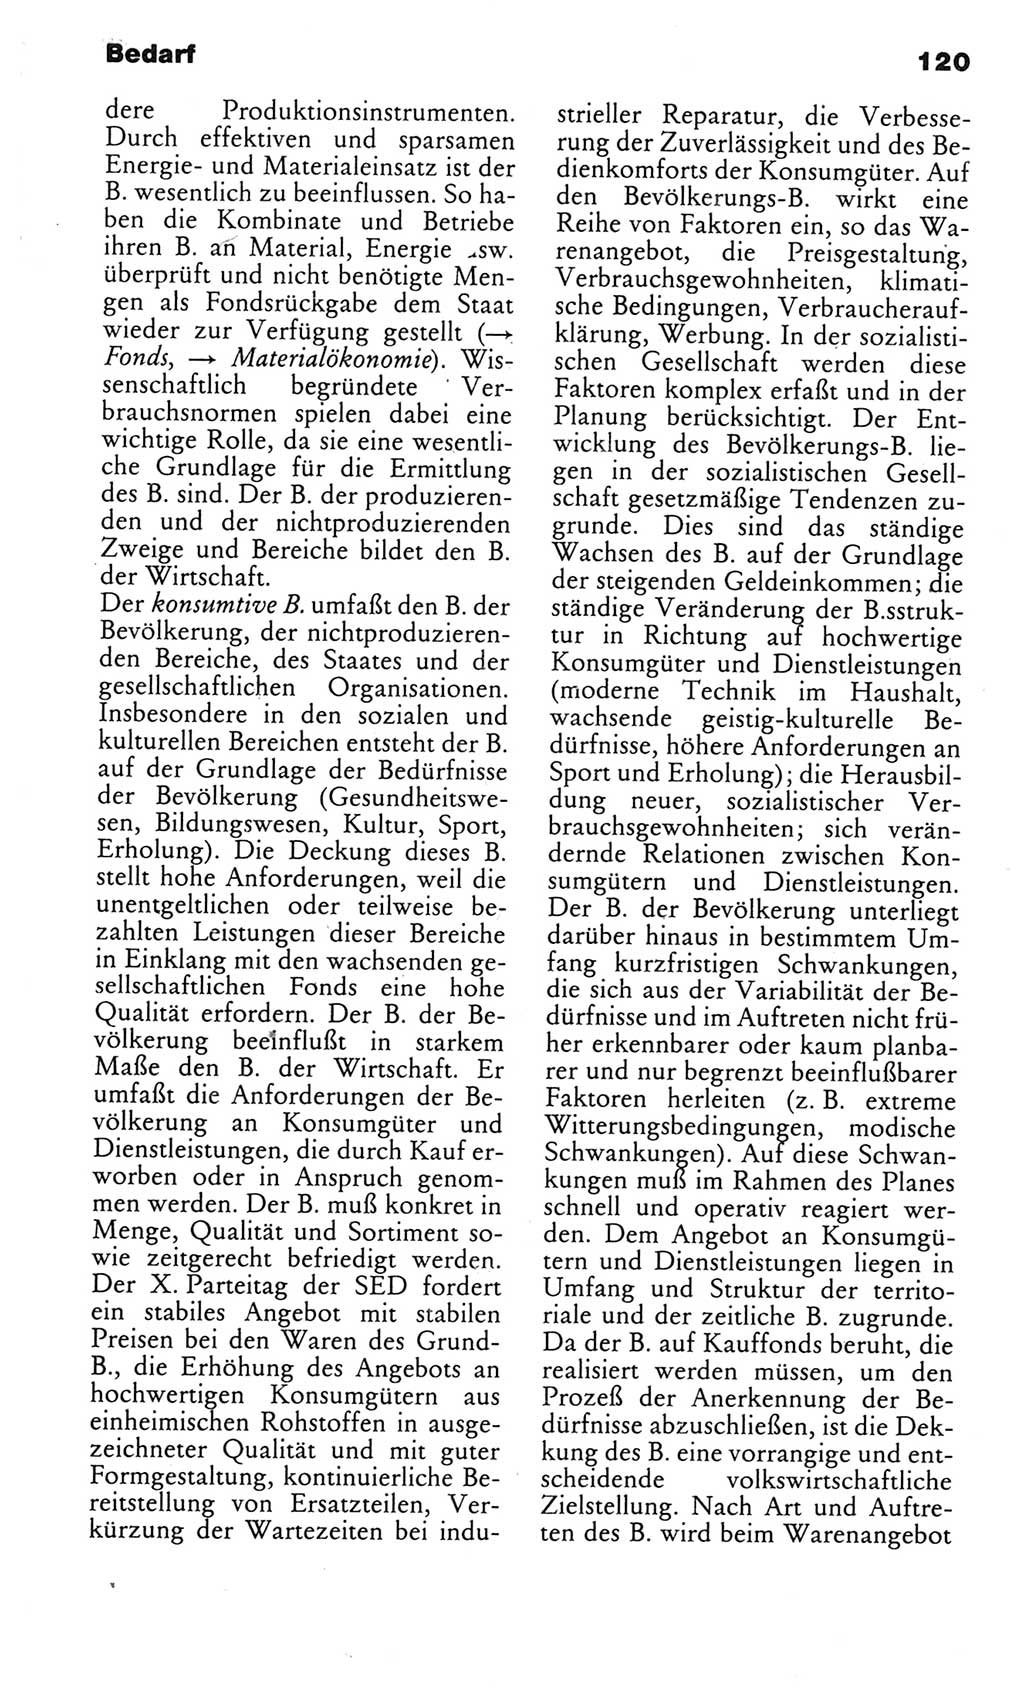 Kleines politisches Wörterbuch [Deutsche Demokratische Republik (DDR)] 1983, Seite 120 (Kl. pol. Wb. DDR 1983, S. 120)